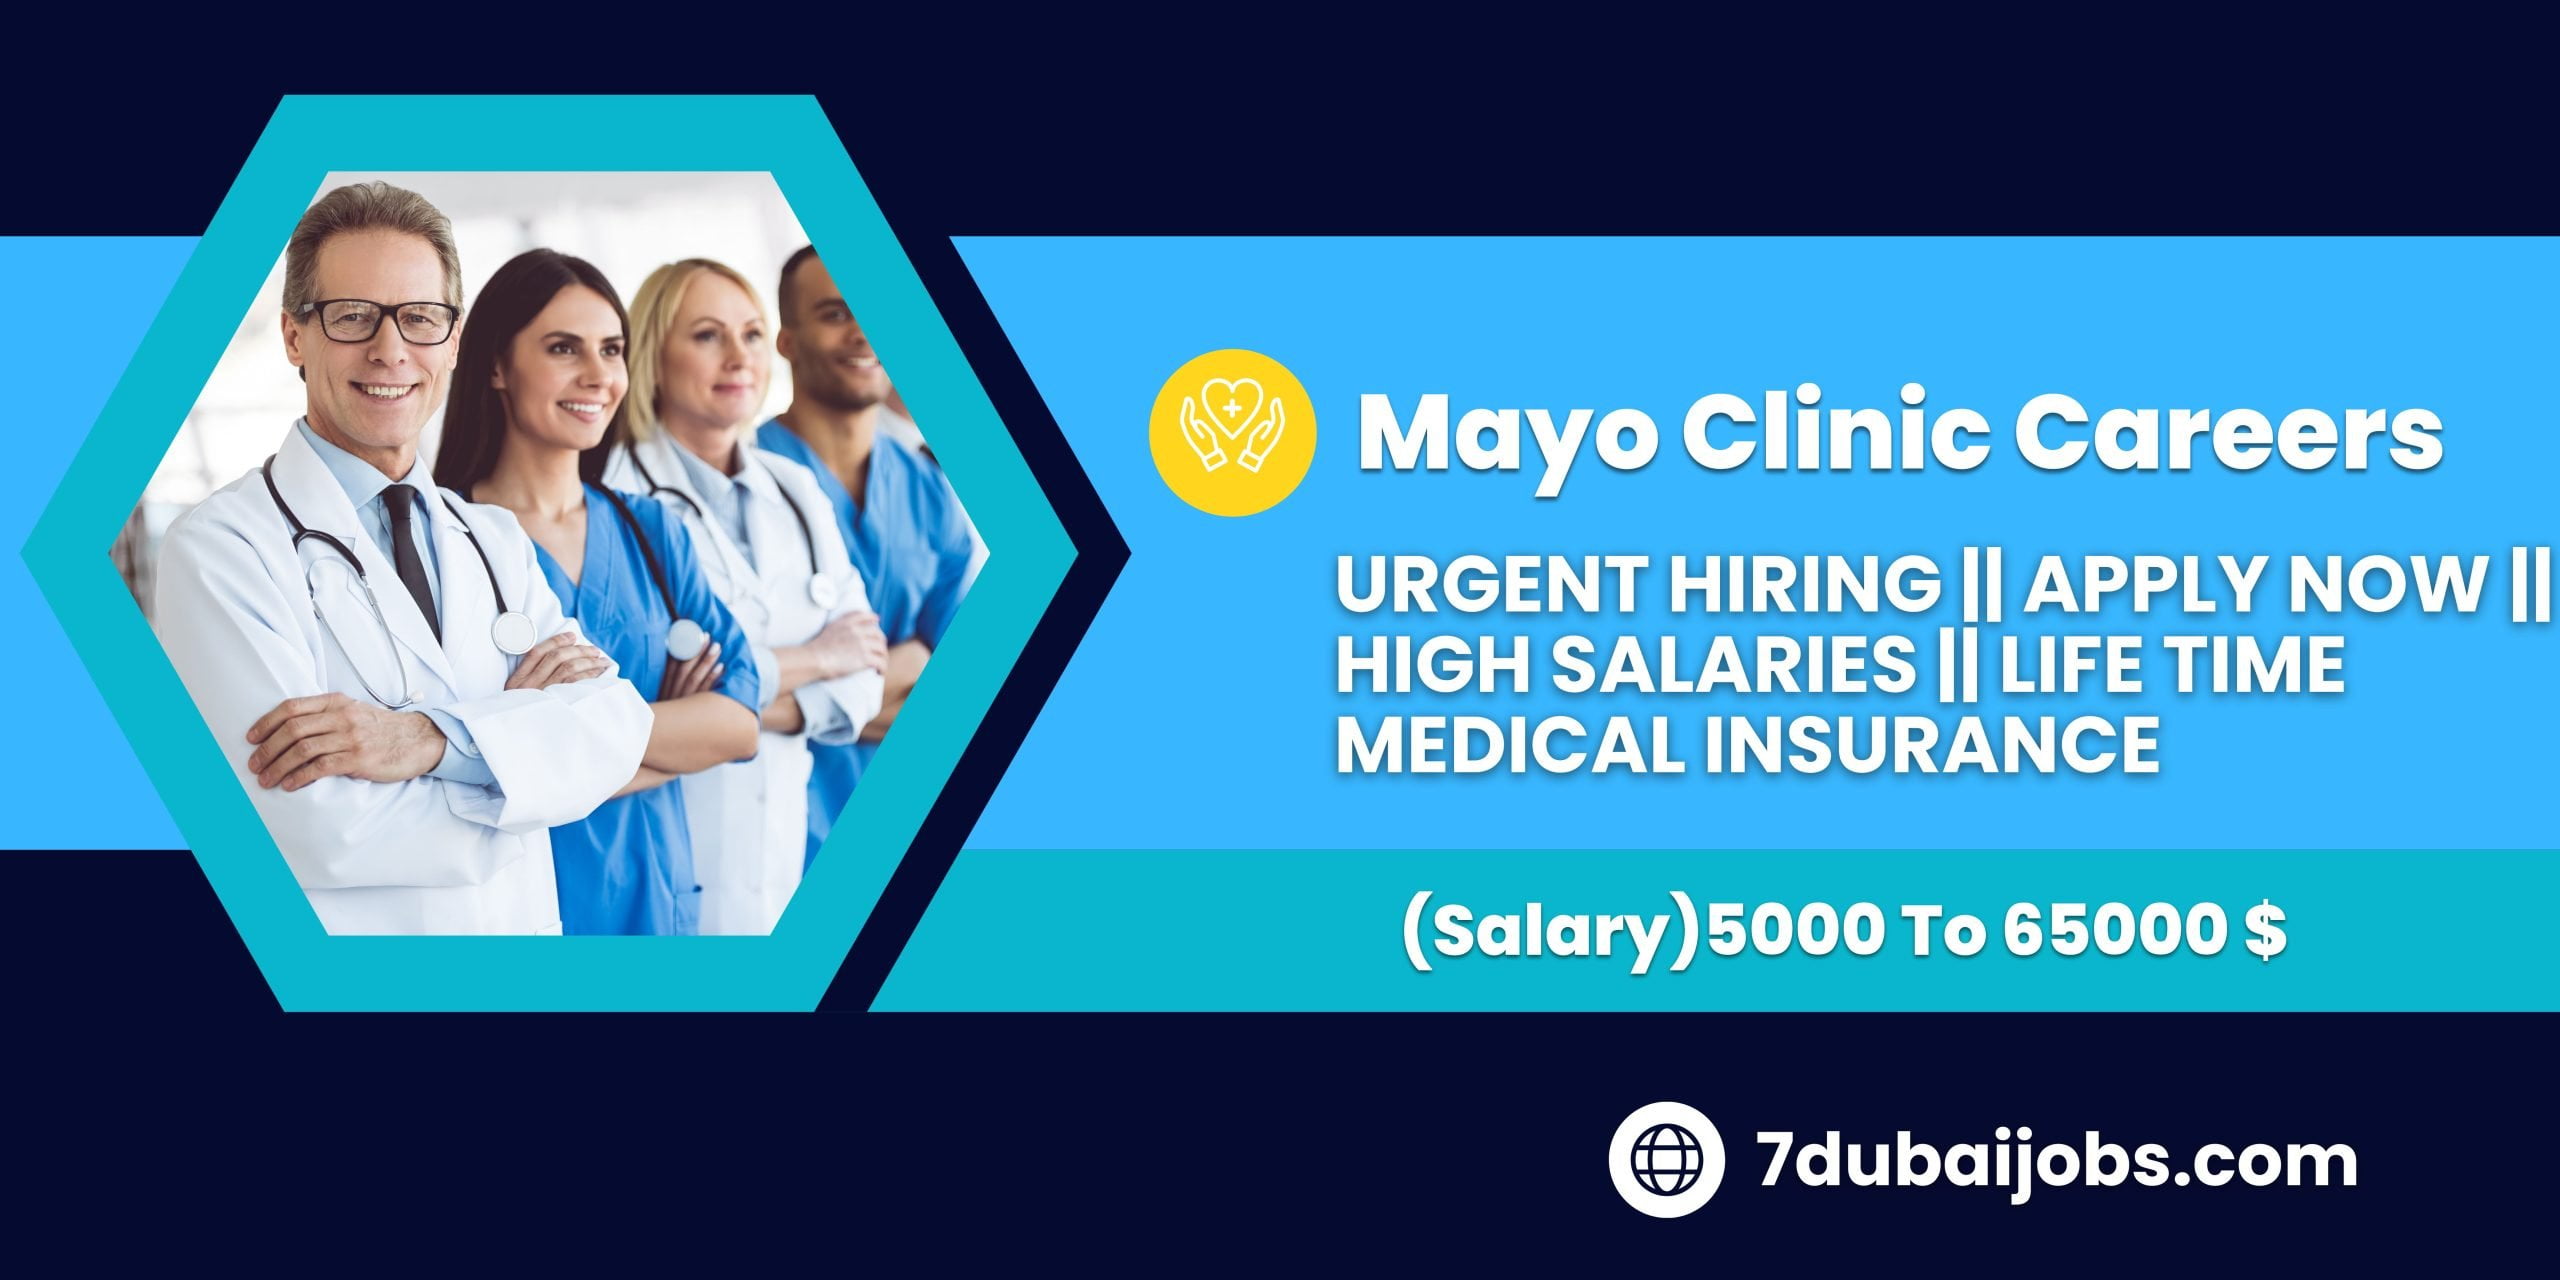 Mayo Clinic Careers